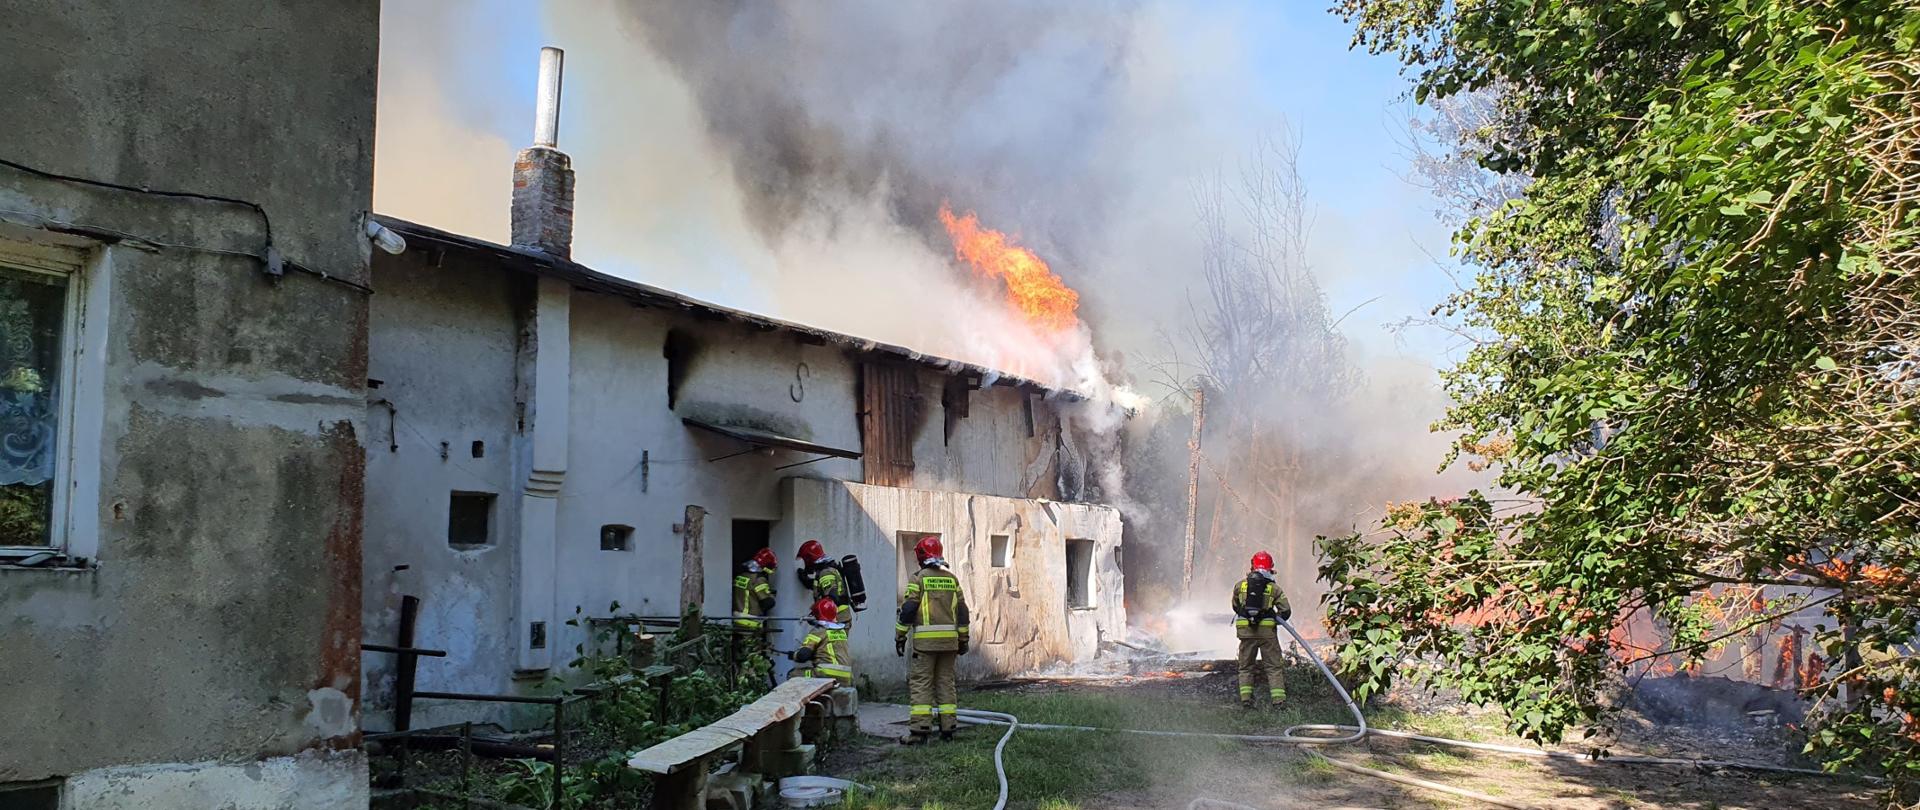 Zdjęcie przedstawia kompleks budynków murowanych, na końcu którego widoczne są płomienie na dachu oraz chmura dymu. Przed budynkiem znajduje się 5 strażaków, którzy gaszą pożar.